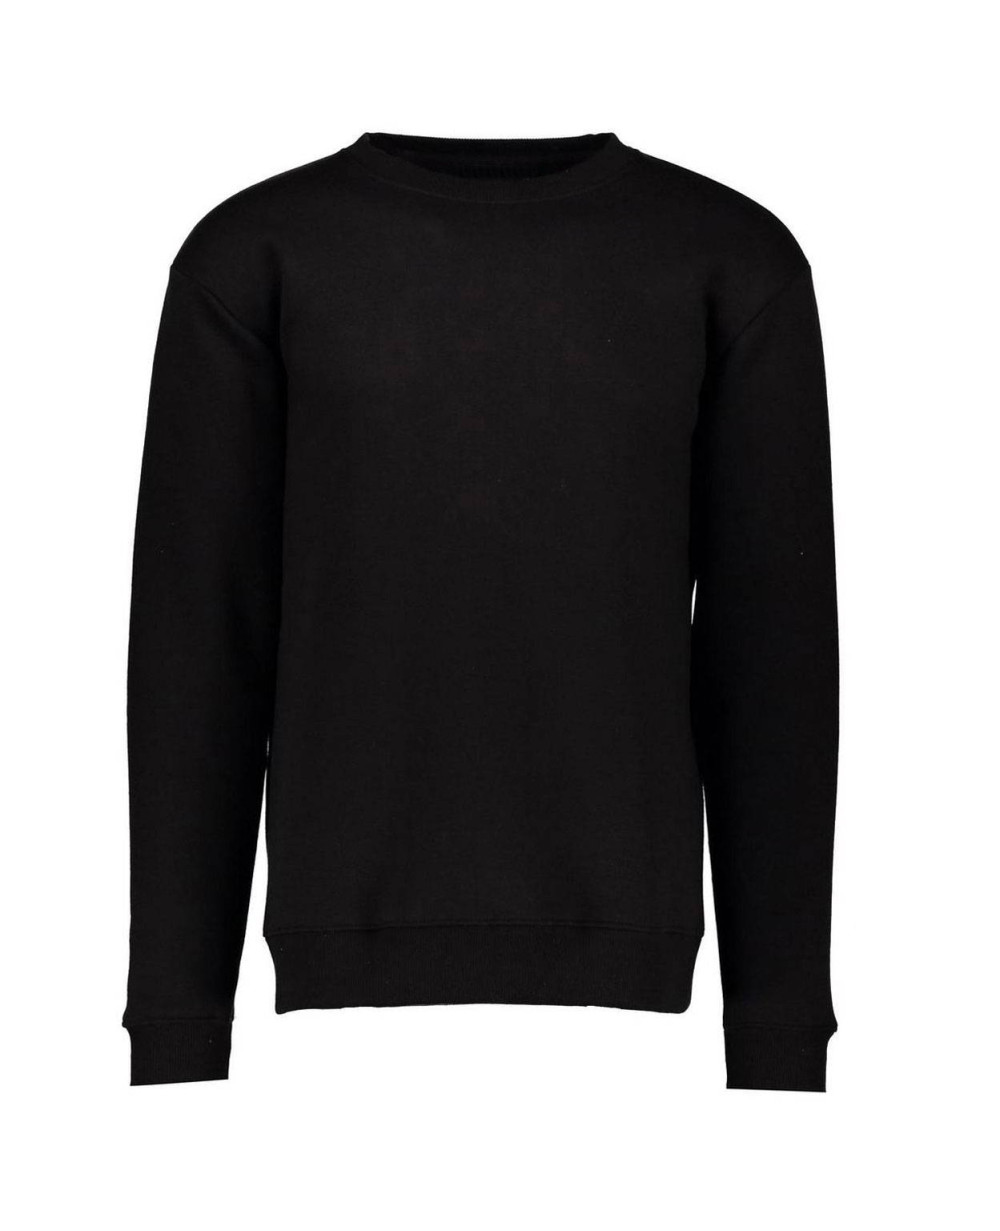 Black Basic Crew Neck Fleece Sweatshirt